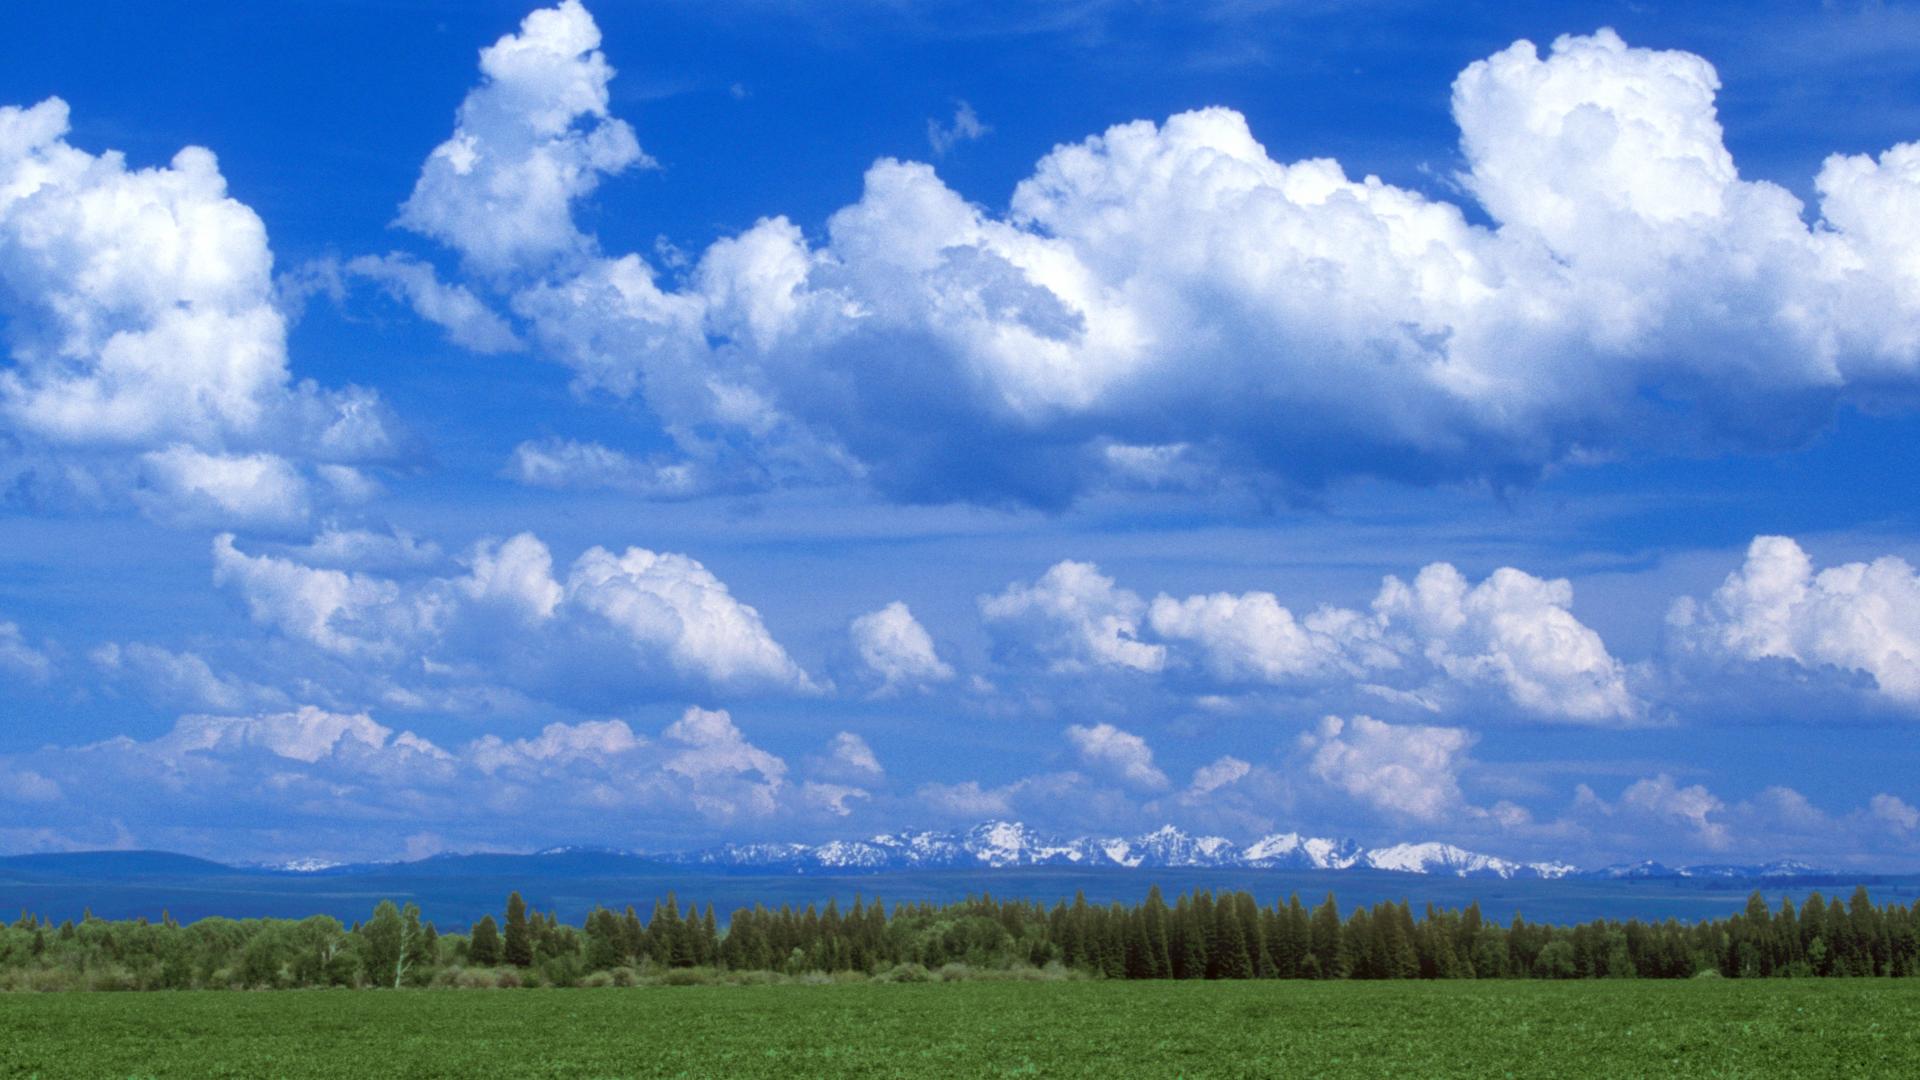 Cùng chiêm ngưỡng những đám mây trôi qua trên bầu trời trong ảnh này nào! Những hình ảnh về đám mây luôn khiến chúng ta cảm thấy thư giãn và bình yên. Bạn có thể thấy những đám mây đủ các kiểu dáng và kích thước, từ những đám mây nhẹ nhàng như bông tuyết đến những đám mây mây nặng trôi qua trên bầu trời xanh.